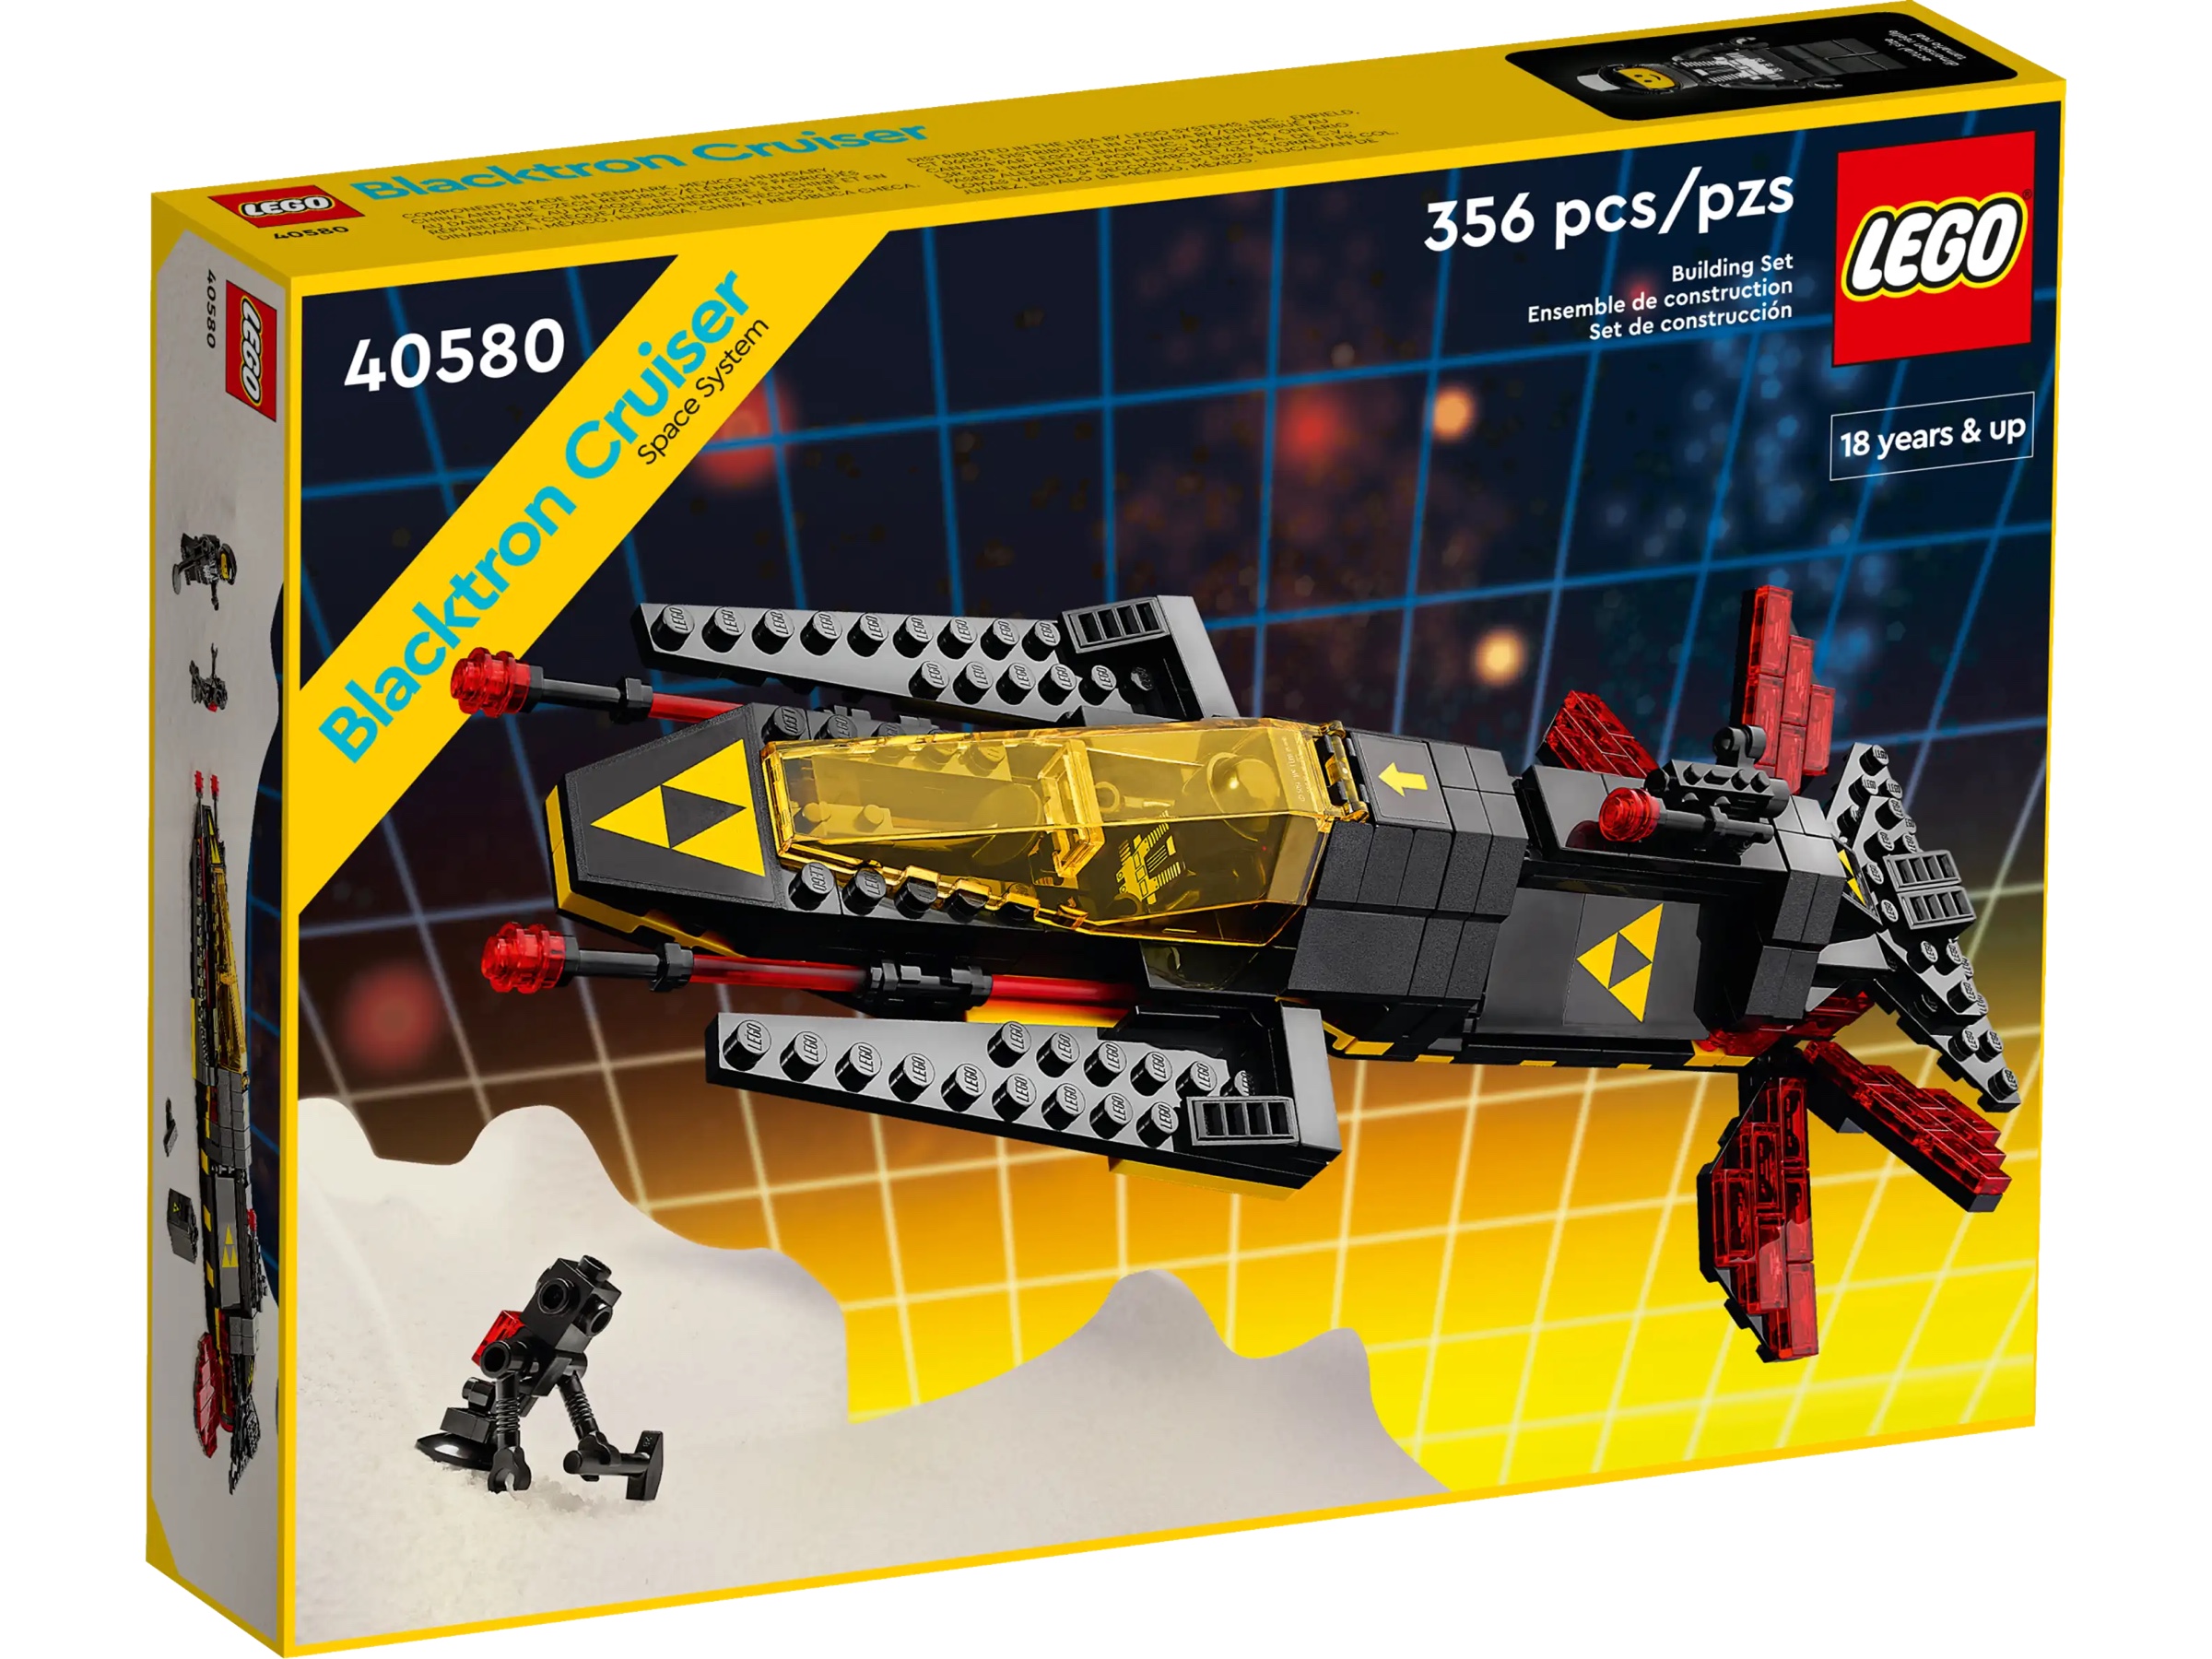 Box for LEGO set 40580: Blacktron Cruiser with 356 pieces